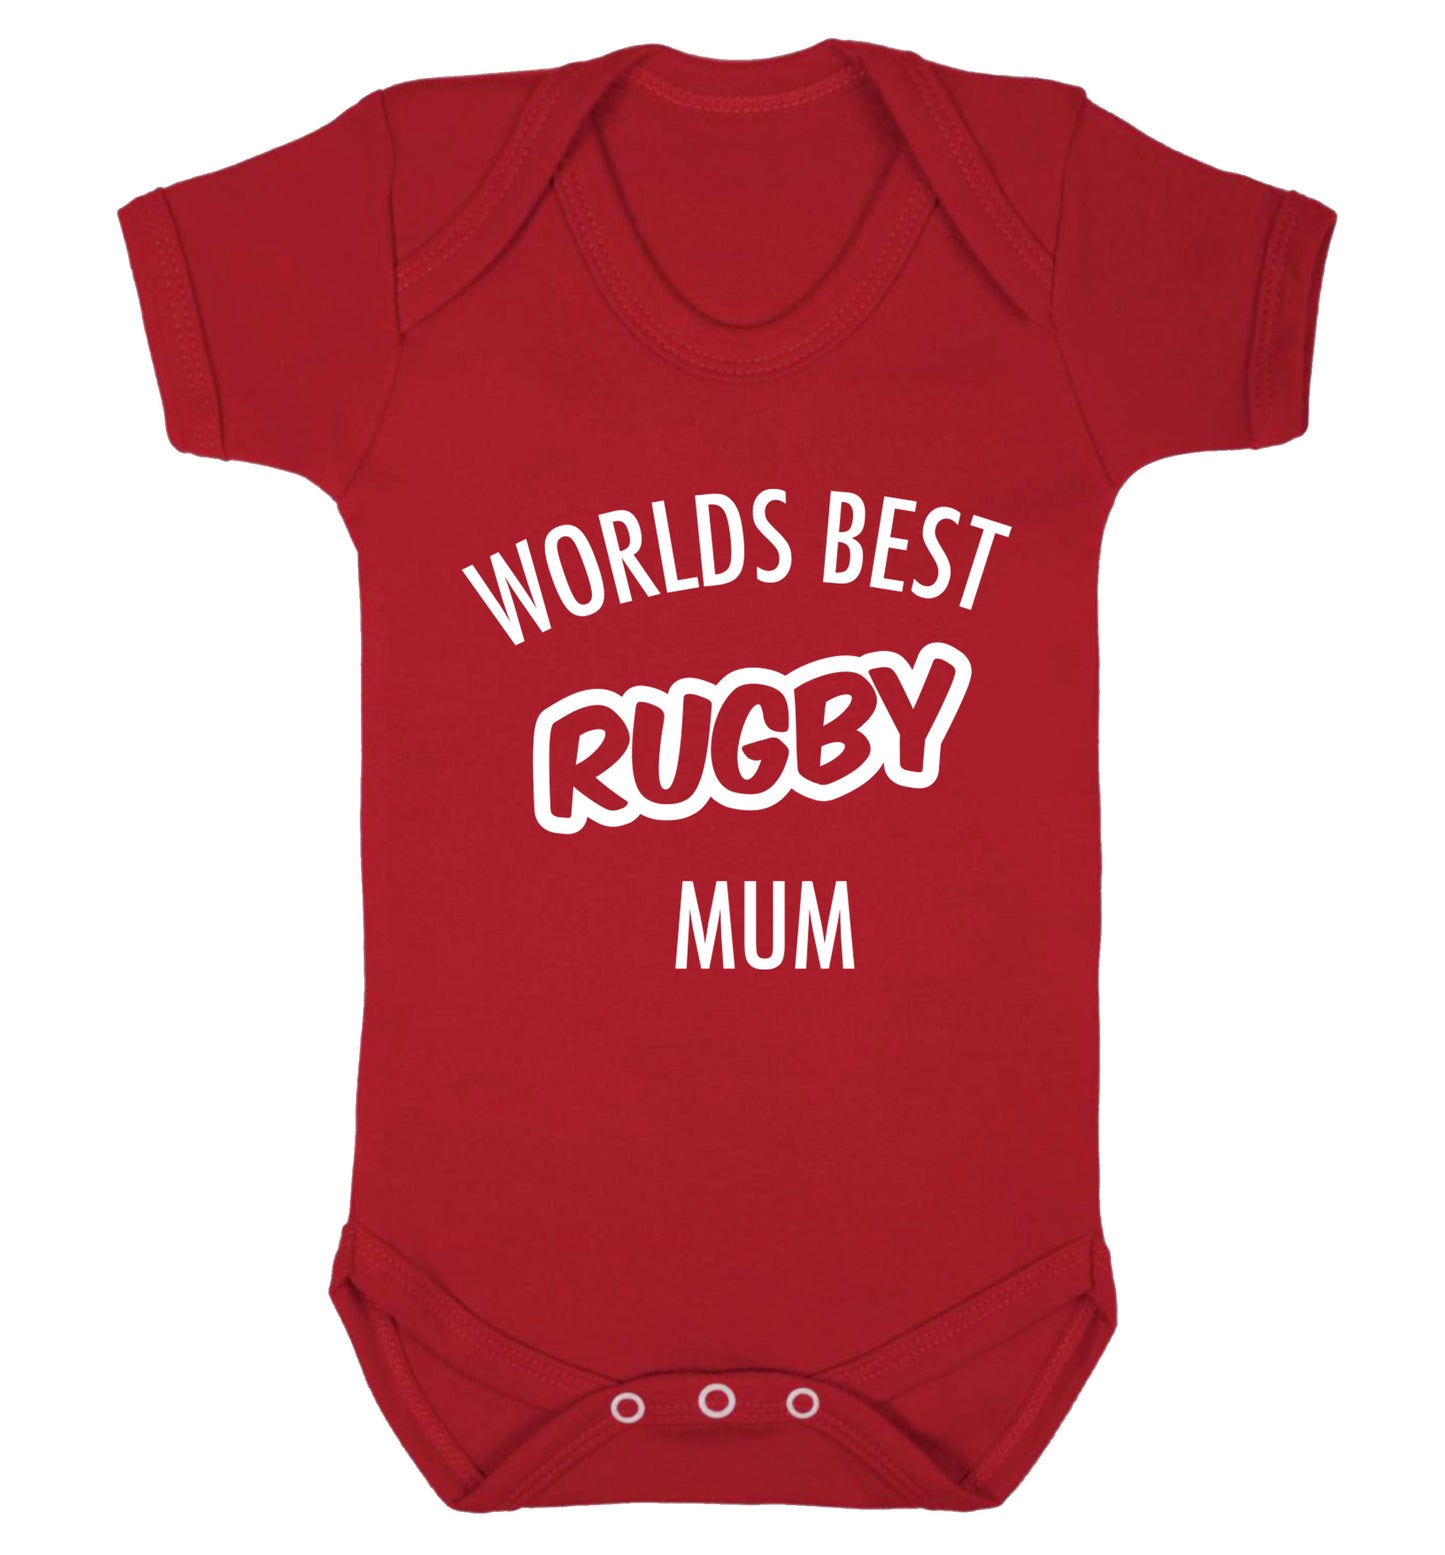 Worlds best rugby mum Baby Vest red 18-24 months